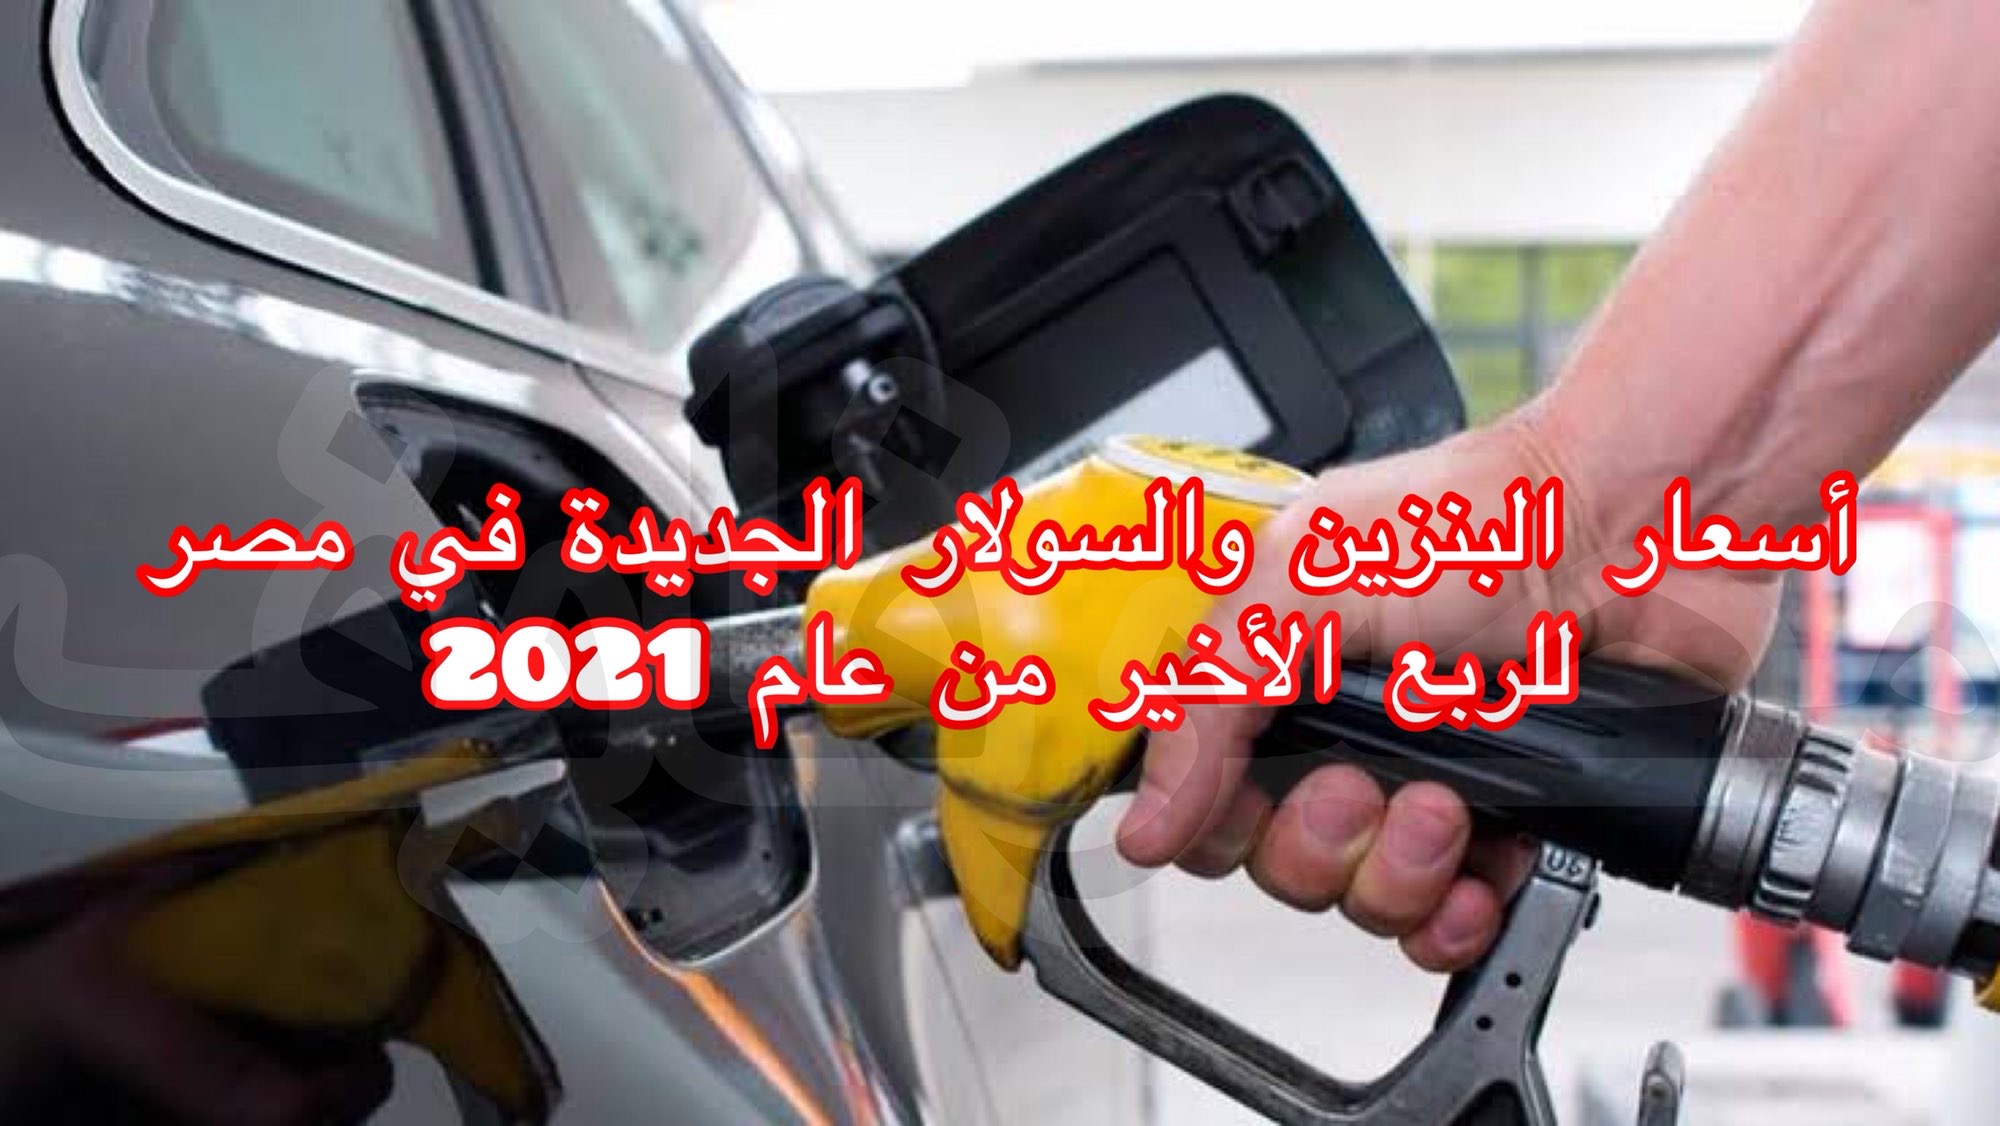 البترول تُعلن أسعار البنزين والسولار الجديدة أكتوبر 2021 وموعد سريانها